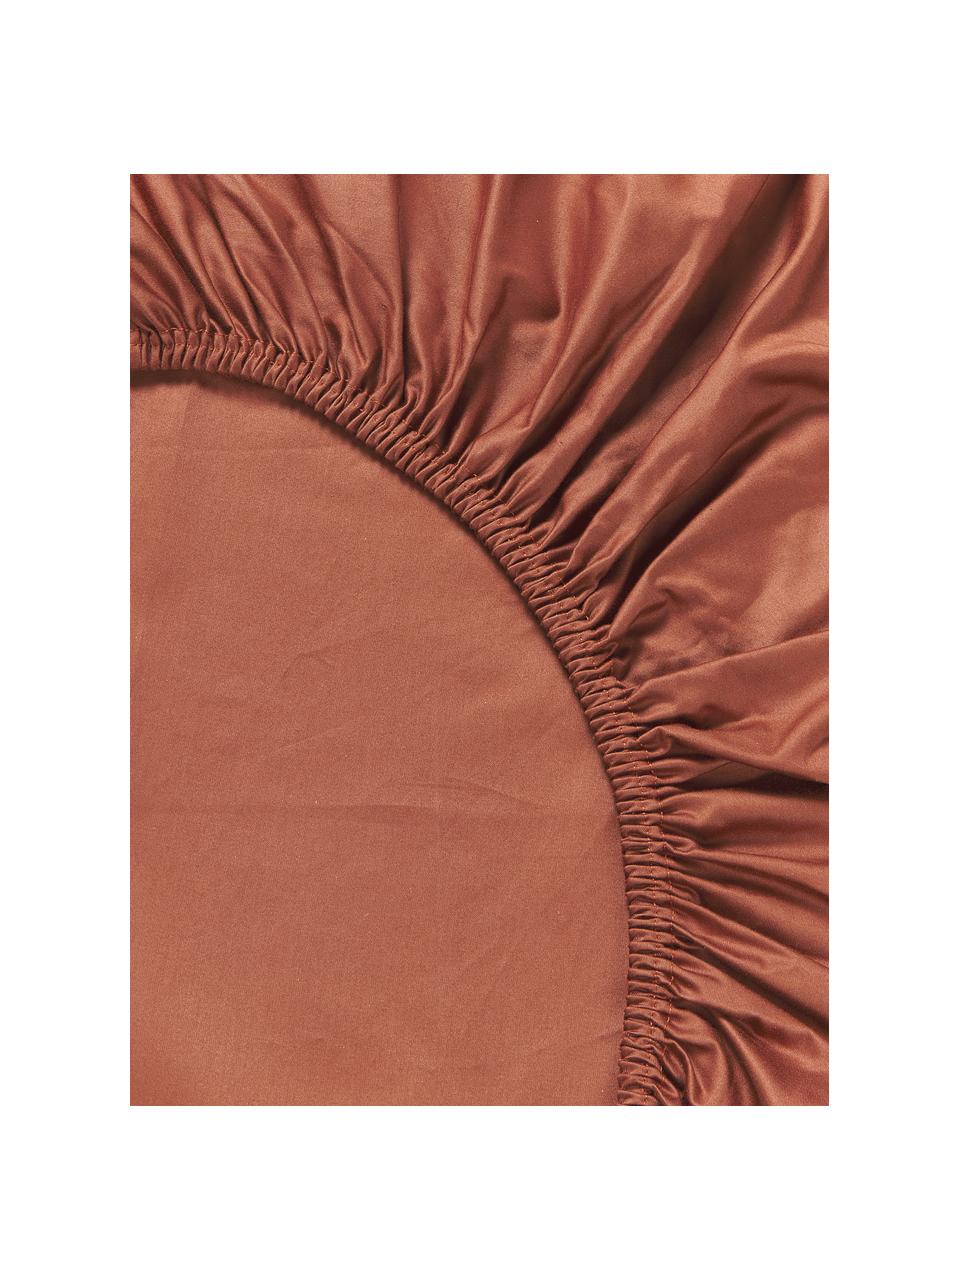 Drap-housse en satin de coton pour surmatelas Premium, Terracotta, larg. 140 x long. 200 cm, haut. 15 cm